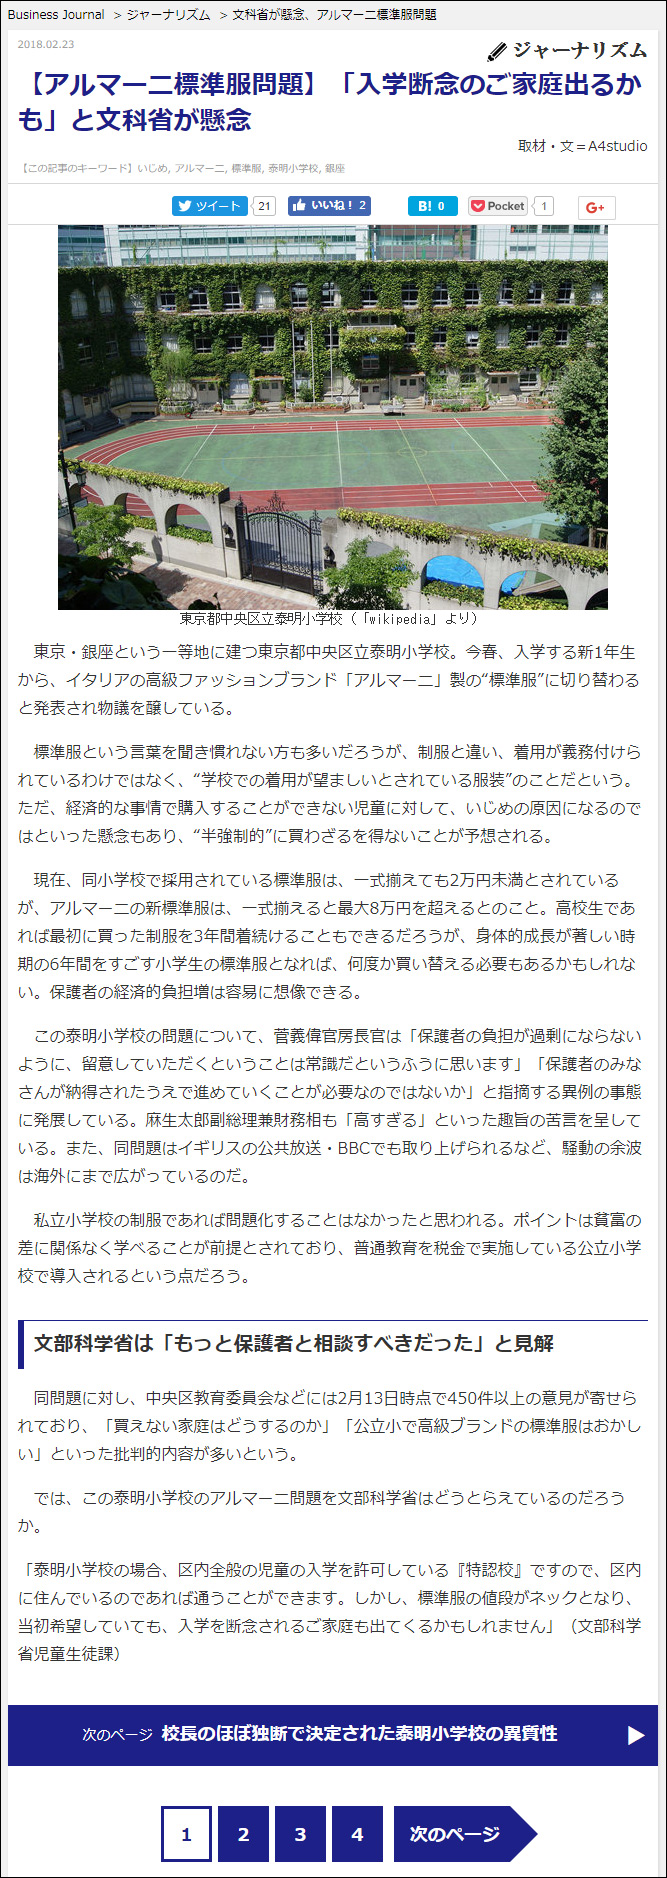 武田さち子：Business Journal掲載、2018年2月23日「【アルマーニ標準服問題】『入学断念のご家庭出るかも』と文科省が懸念」